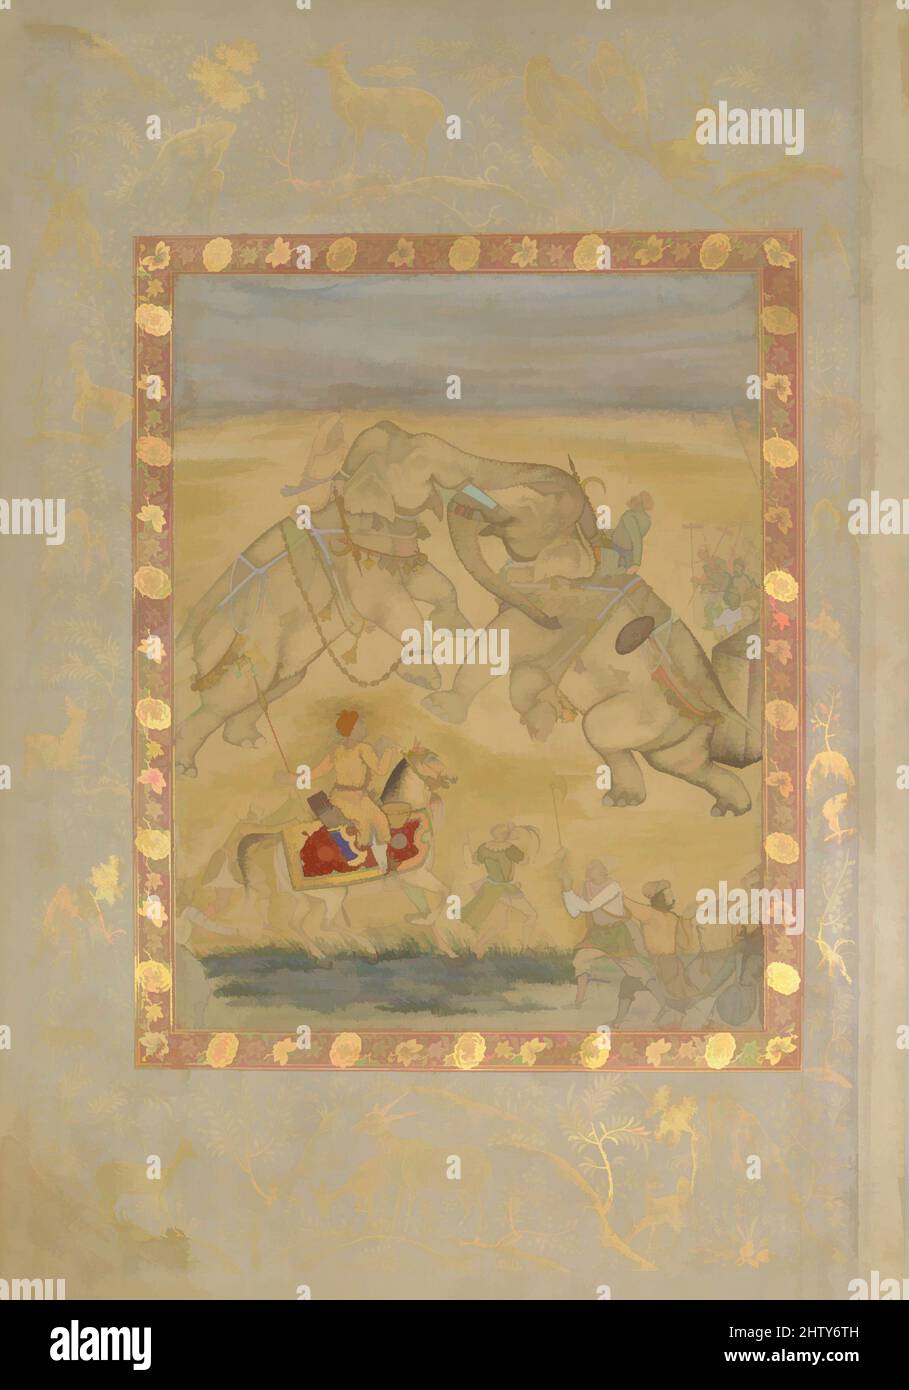 Kunst inspiriert von Jahangir beim Elefantenkampf, ca. 1605, Indien zugeschrieben, Hauptstütze: Tinte, opakes Aquarell, Gold auf Papier, 18 1/2 x 12 7/8in. (47 x 32,7cm), Codices, Elefanten wurden für ihre Stärke und Macht in Mughal Indien geschätzt, wo sie für die Jagd verwendet wurden, Classic Works modernisiert von Artotop mit einem Schuss Moderne. Formen, Farbe und Wert, auffällige visuelle Wirkung auf Kunst. Emotionen durch Freiheit von Kunstwerken auf zeitgemäße Weise. Eine zeitlose Botschaft, die eine wild kreative neue Richtung verfolgt. Künstler, die sich dem digitalen Medium zuwenden und die Artotop NFT erschaffen Stockfoto